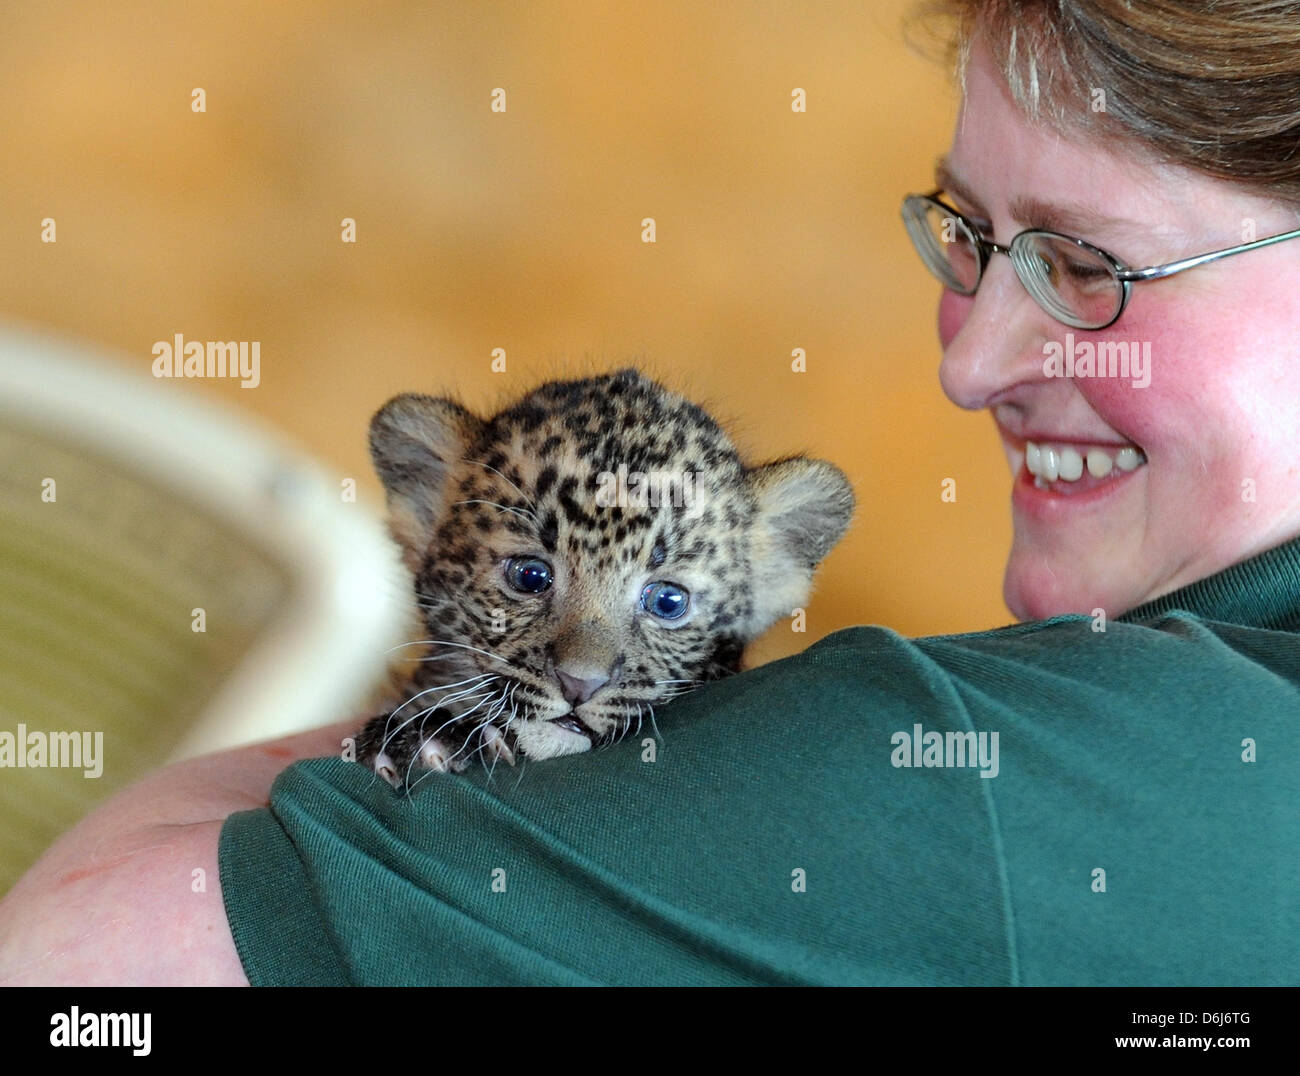 Ein Tierpfleger präsentiert Baby Javan Leopard Sri Kandi am Tierpark in Berlin, Deutschland, 5. März 2012. Die Tiere wurden am 16. Januar 2012 geboren. Dies ist das erste Mal die seltenen Arten in den Tierpark gepflegt ist. Foto: BRITTA PEDERSEN Stockfoto